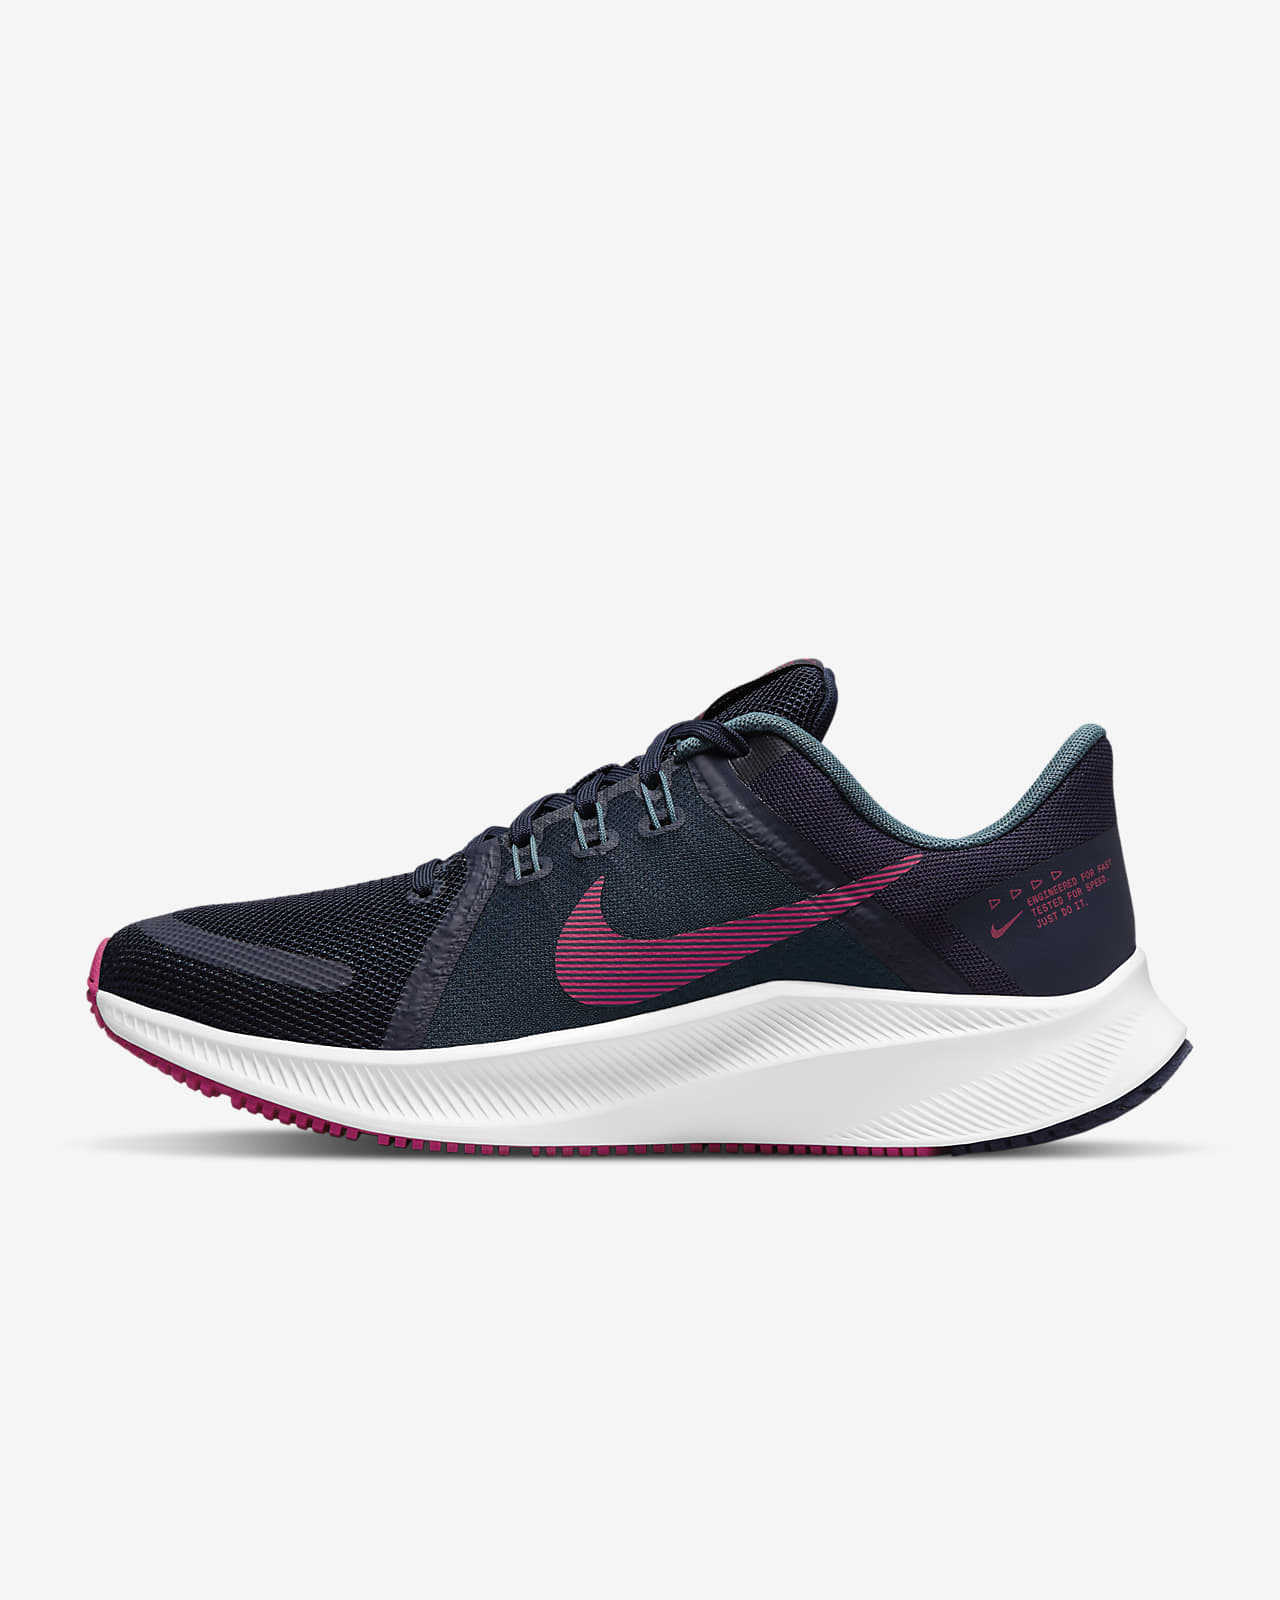 Γυναικείο παπούτσι για τρέξιμο σε δρόμο Nike Quest 4